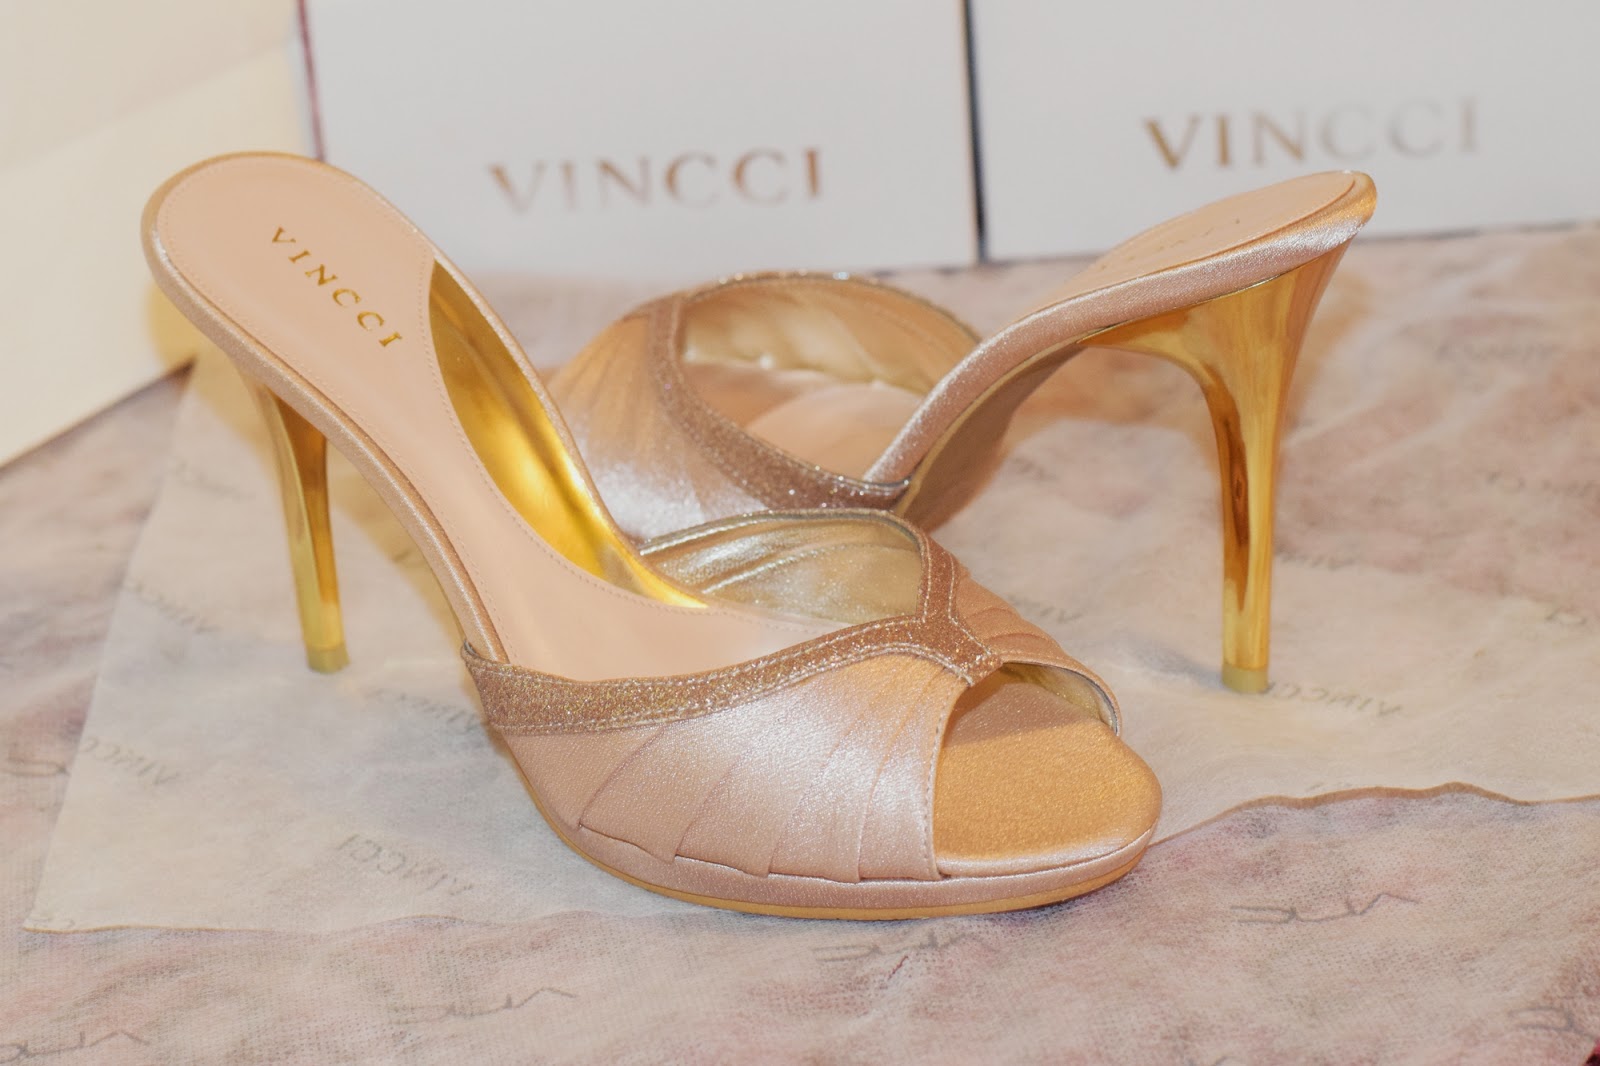 Vincci Shoes